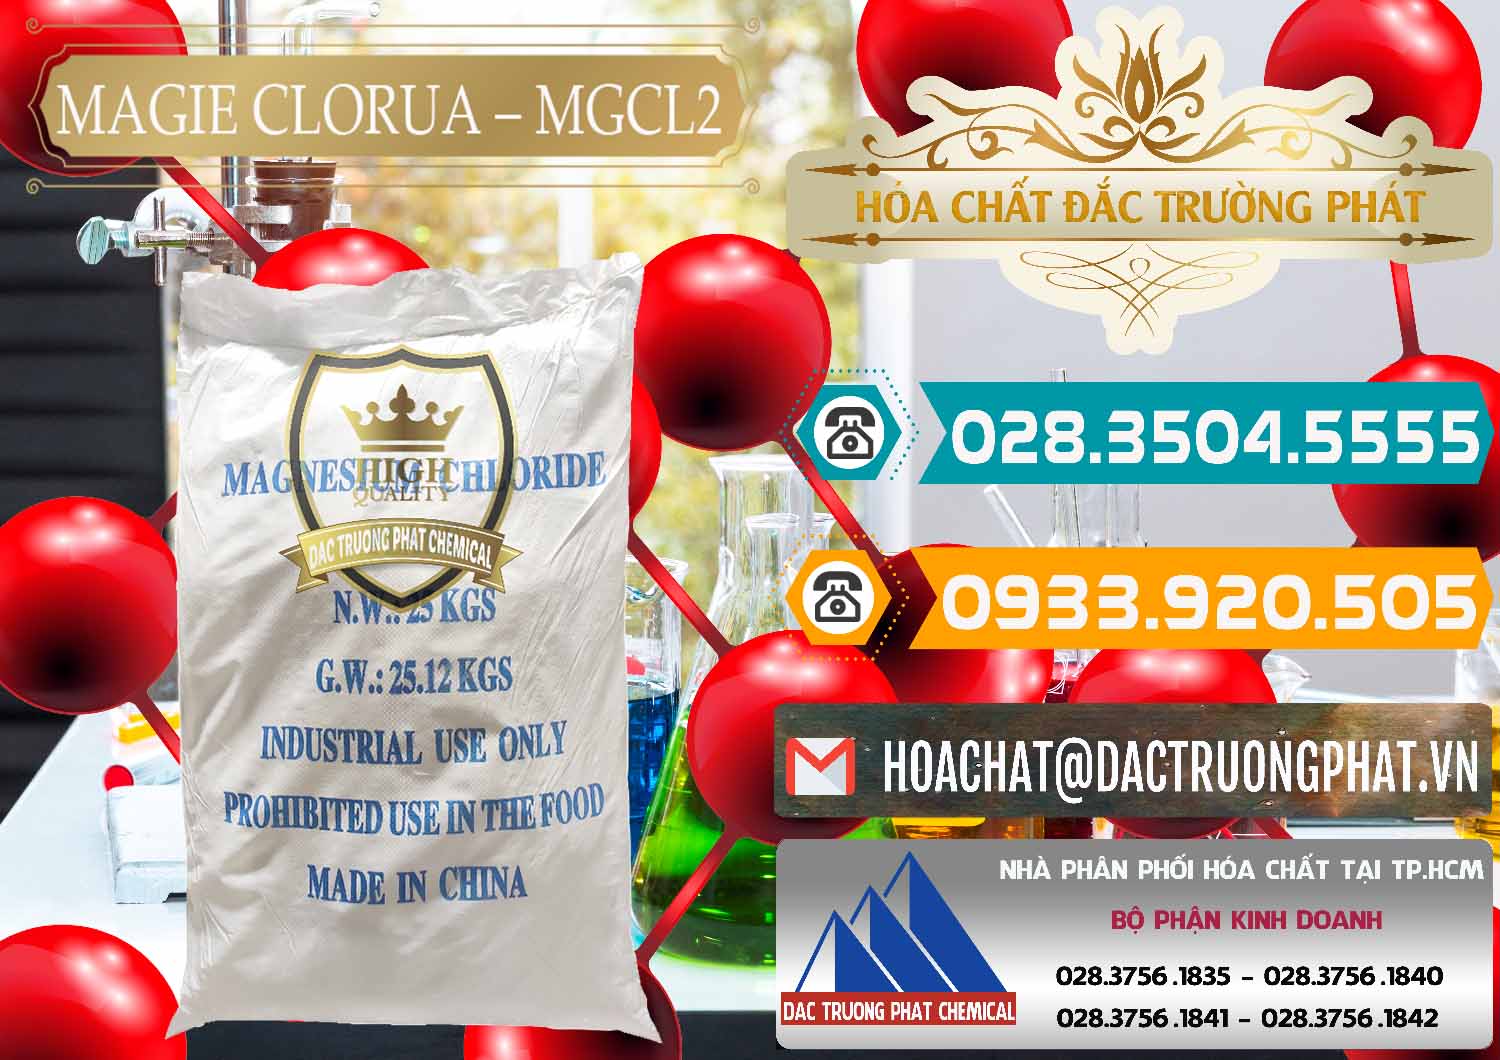 Đơn vị nhập khẩu _ bán Magie Clorua – MGCL2 96% Dạng Vảy Trung Quốc China - 0091 - Cty chuyên cung cấp ( bán ) hóa chất tại TP.HCM - congtyhoachat.vn